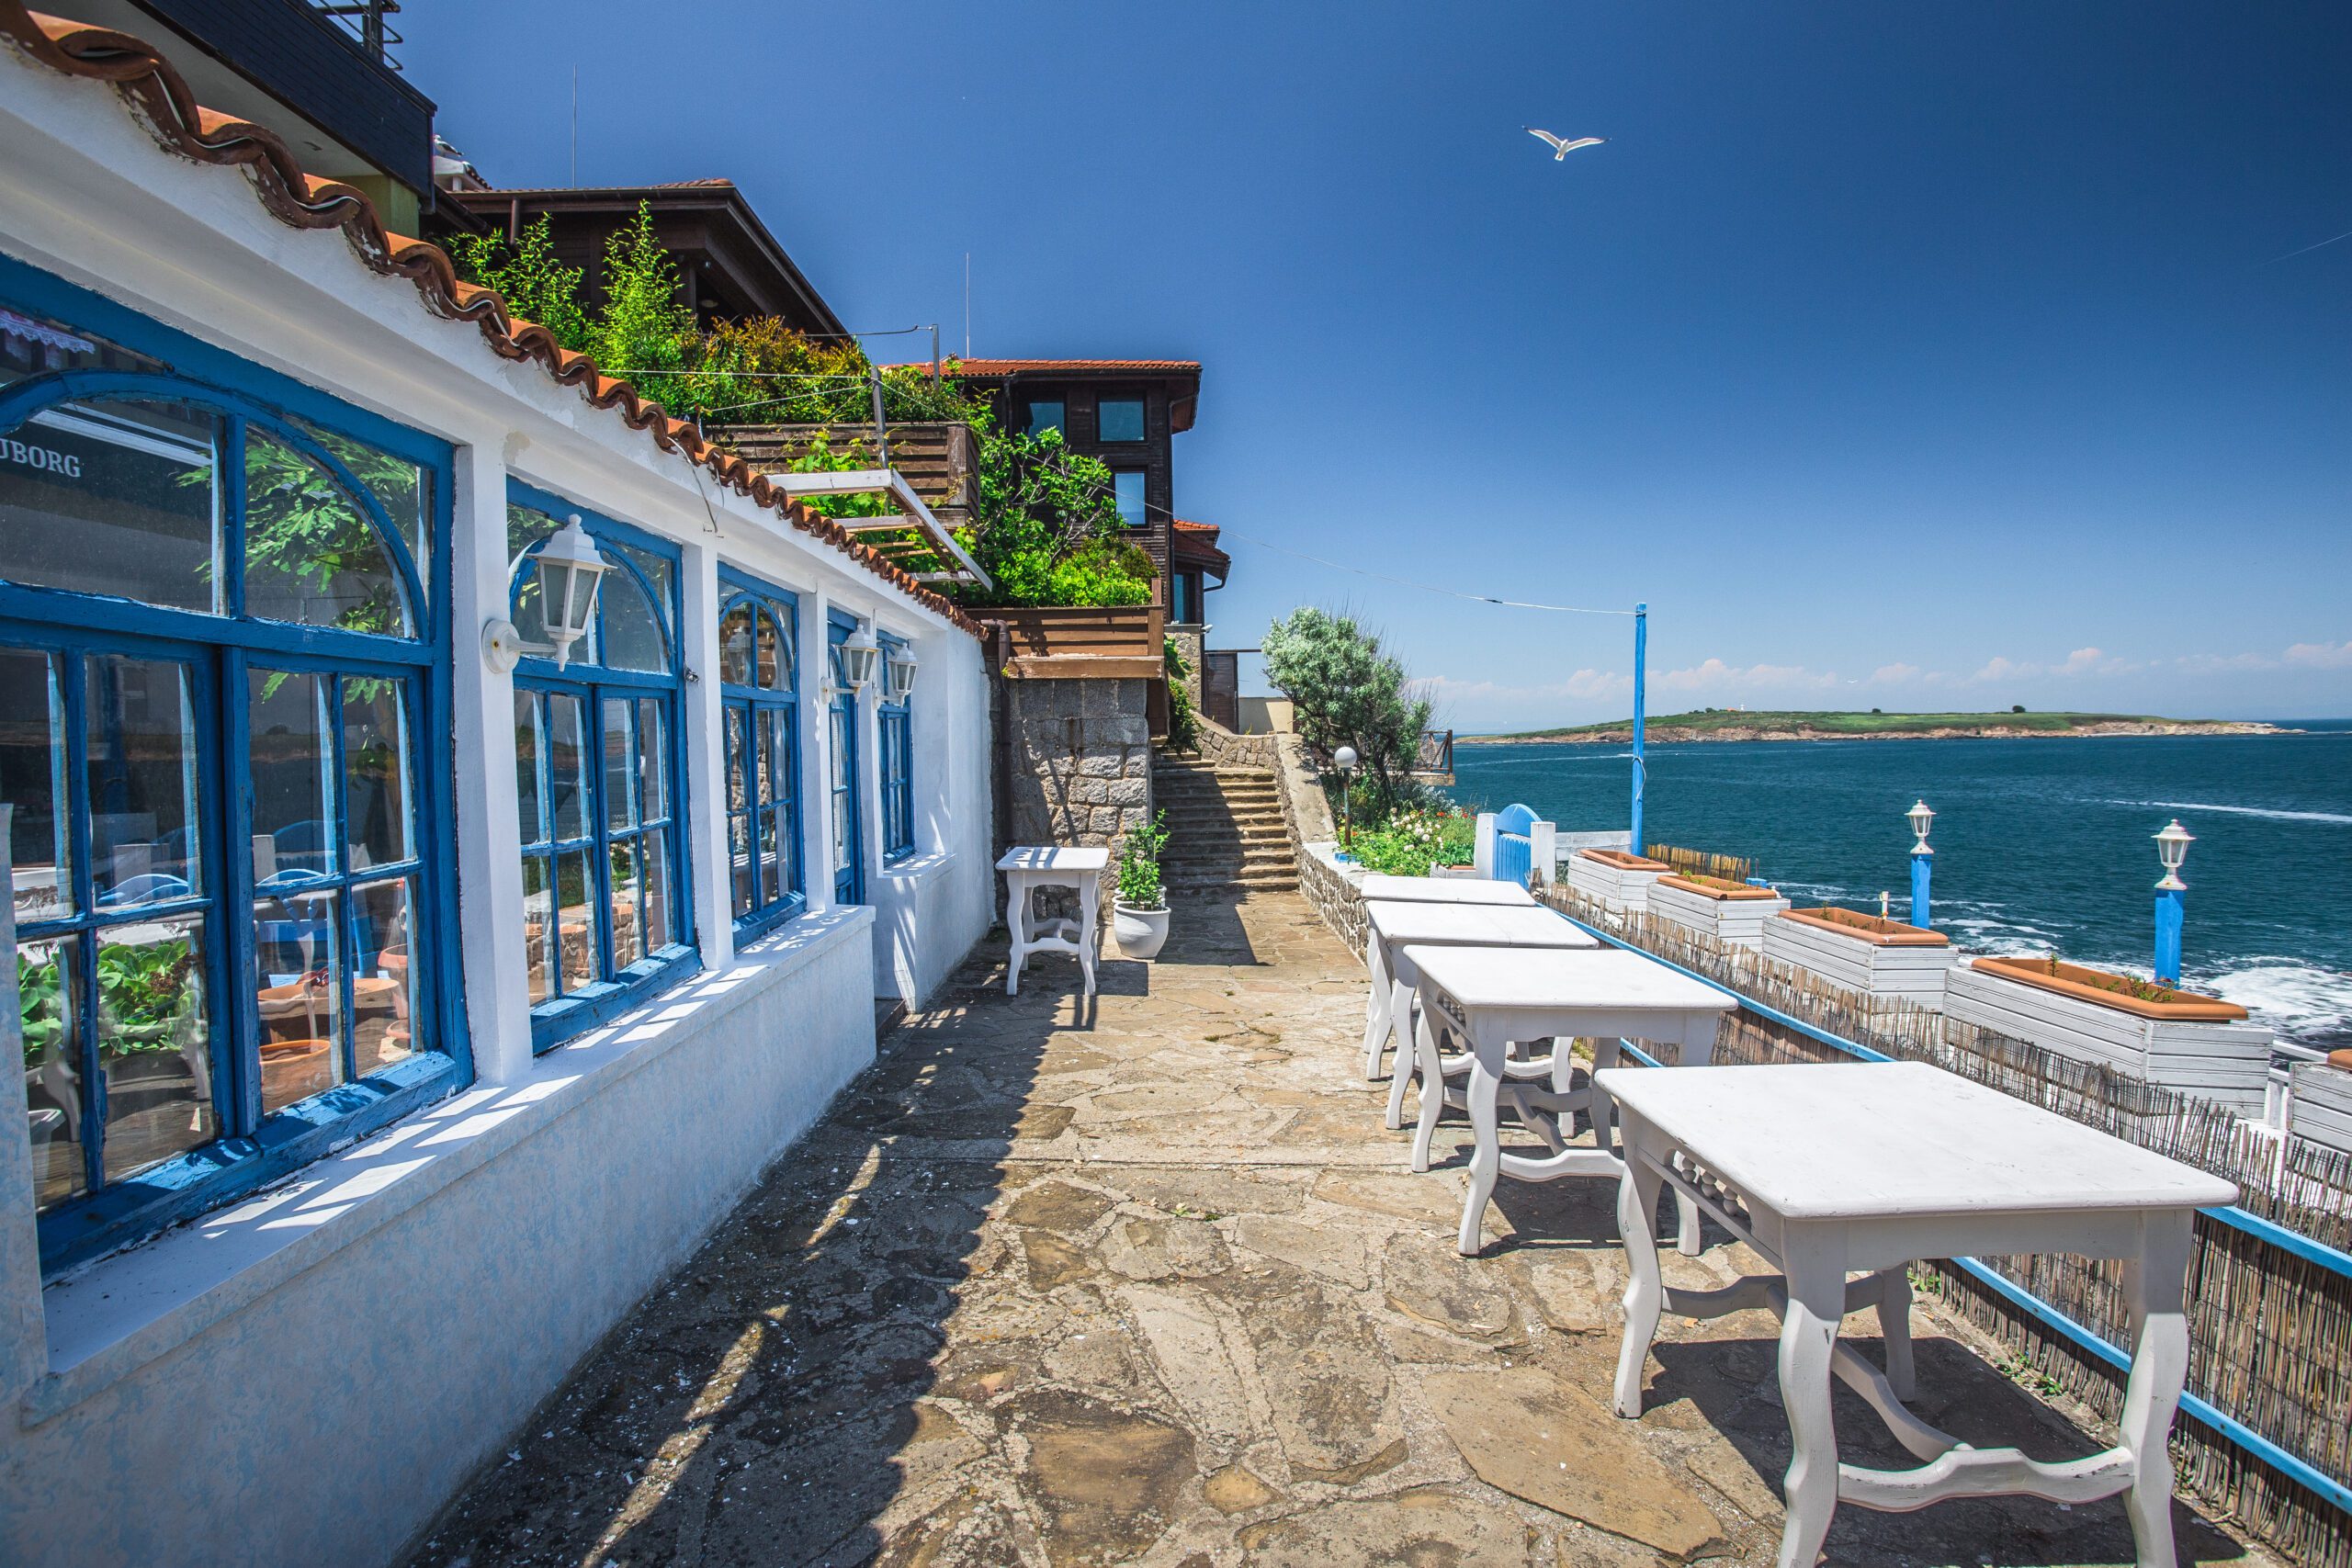 Seaside resort of Sozopol in Bulgaria